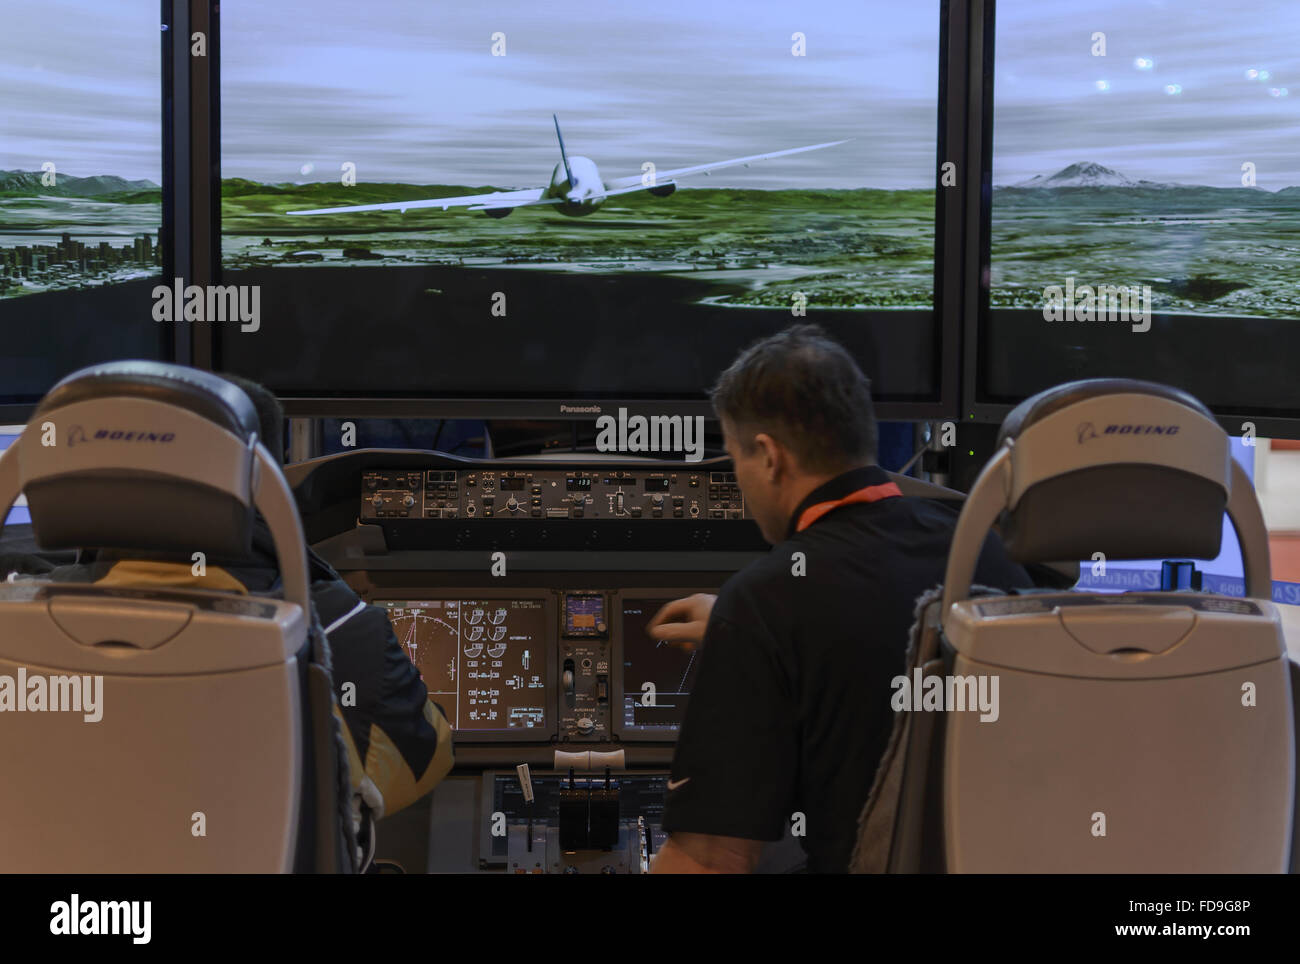 Un simulateur d'avion en vue cabine salon du tourisme Fitur, Madrid, Espagne Banque D'Images